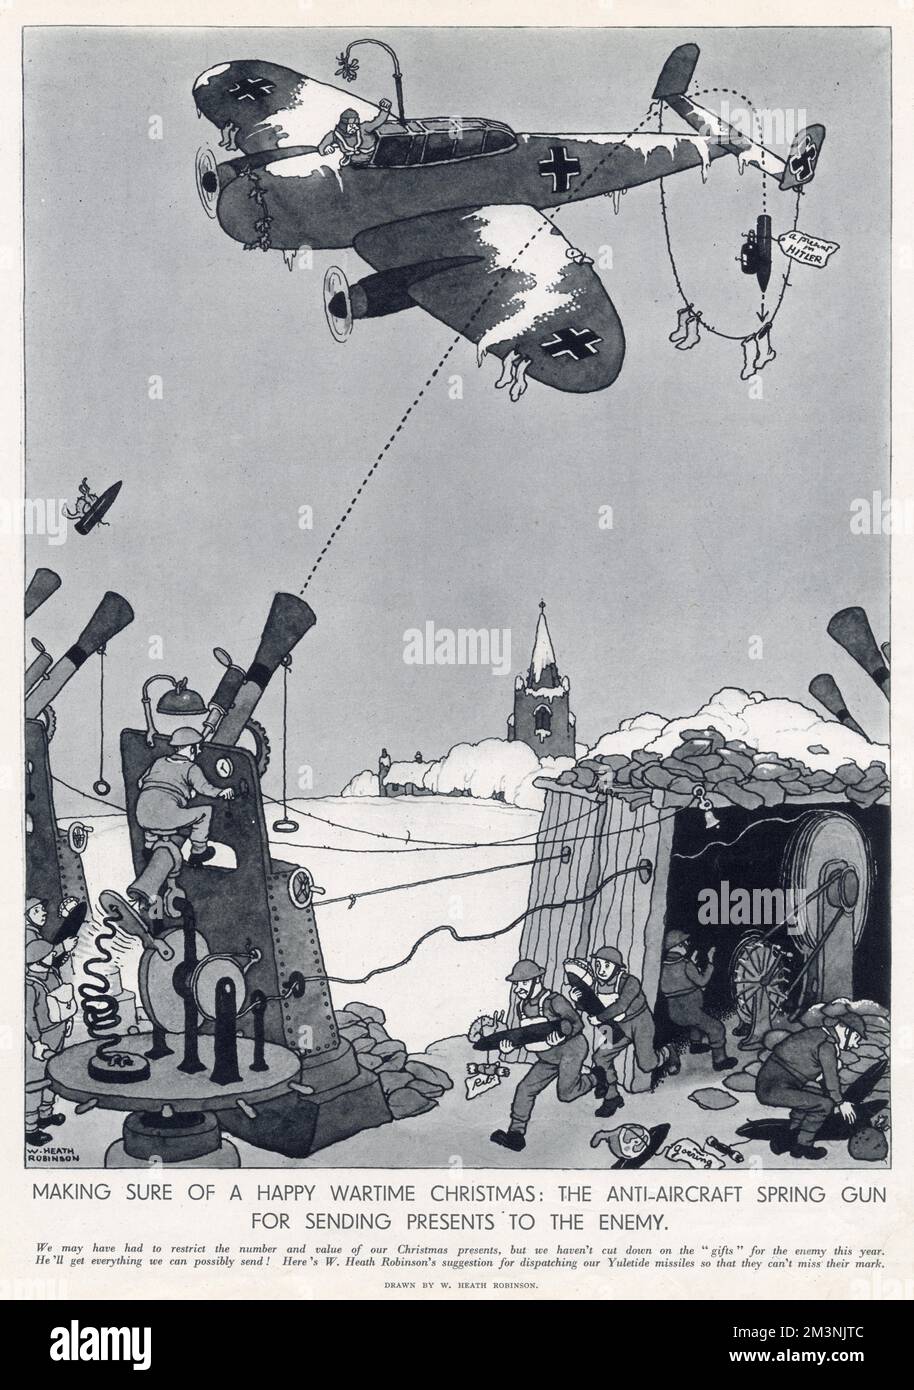 Ein Vorschlag von William Heath Robinson, Geschenke an den Feind zu Weihnachten zu schicken. Stockfoto